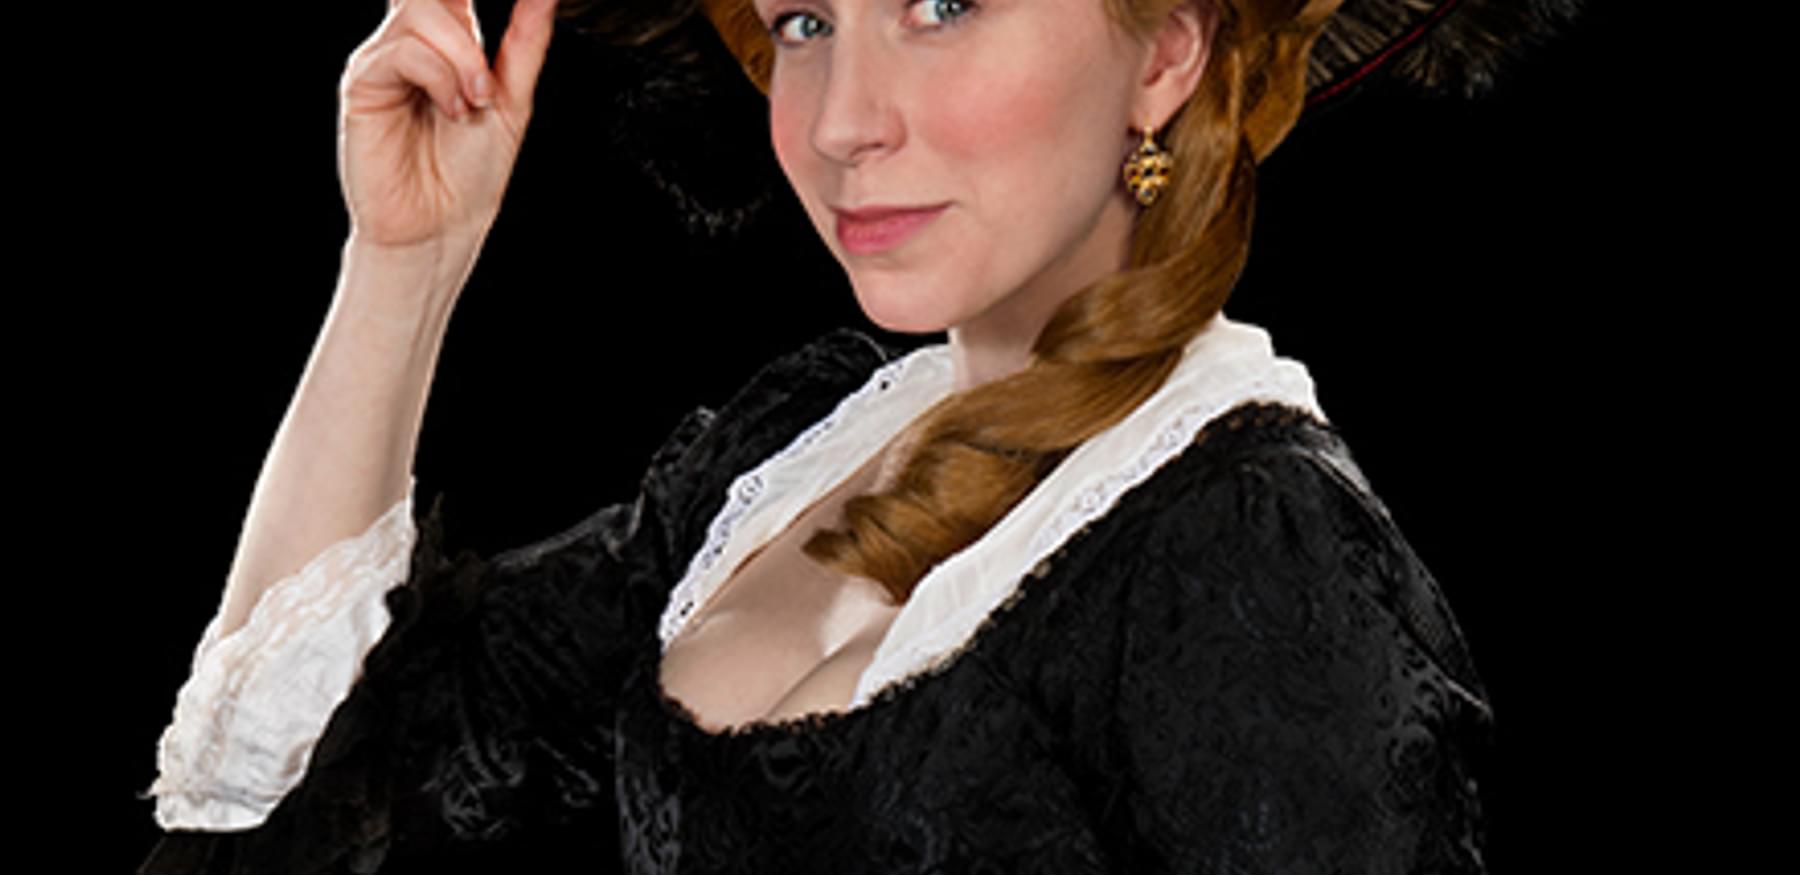 Austens Women Lady Susan MAIN image portrait cropped WEB